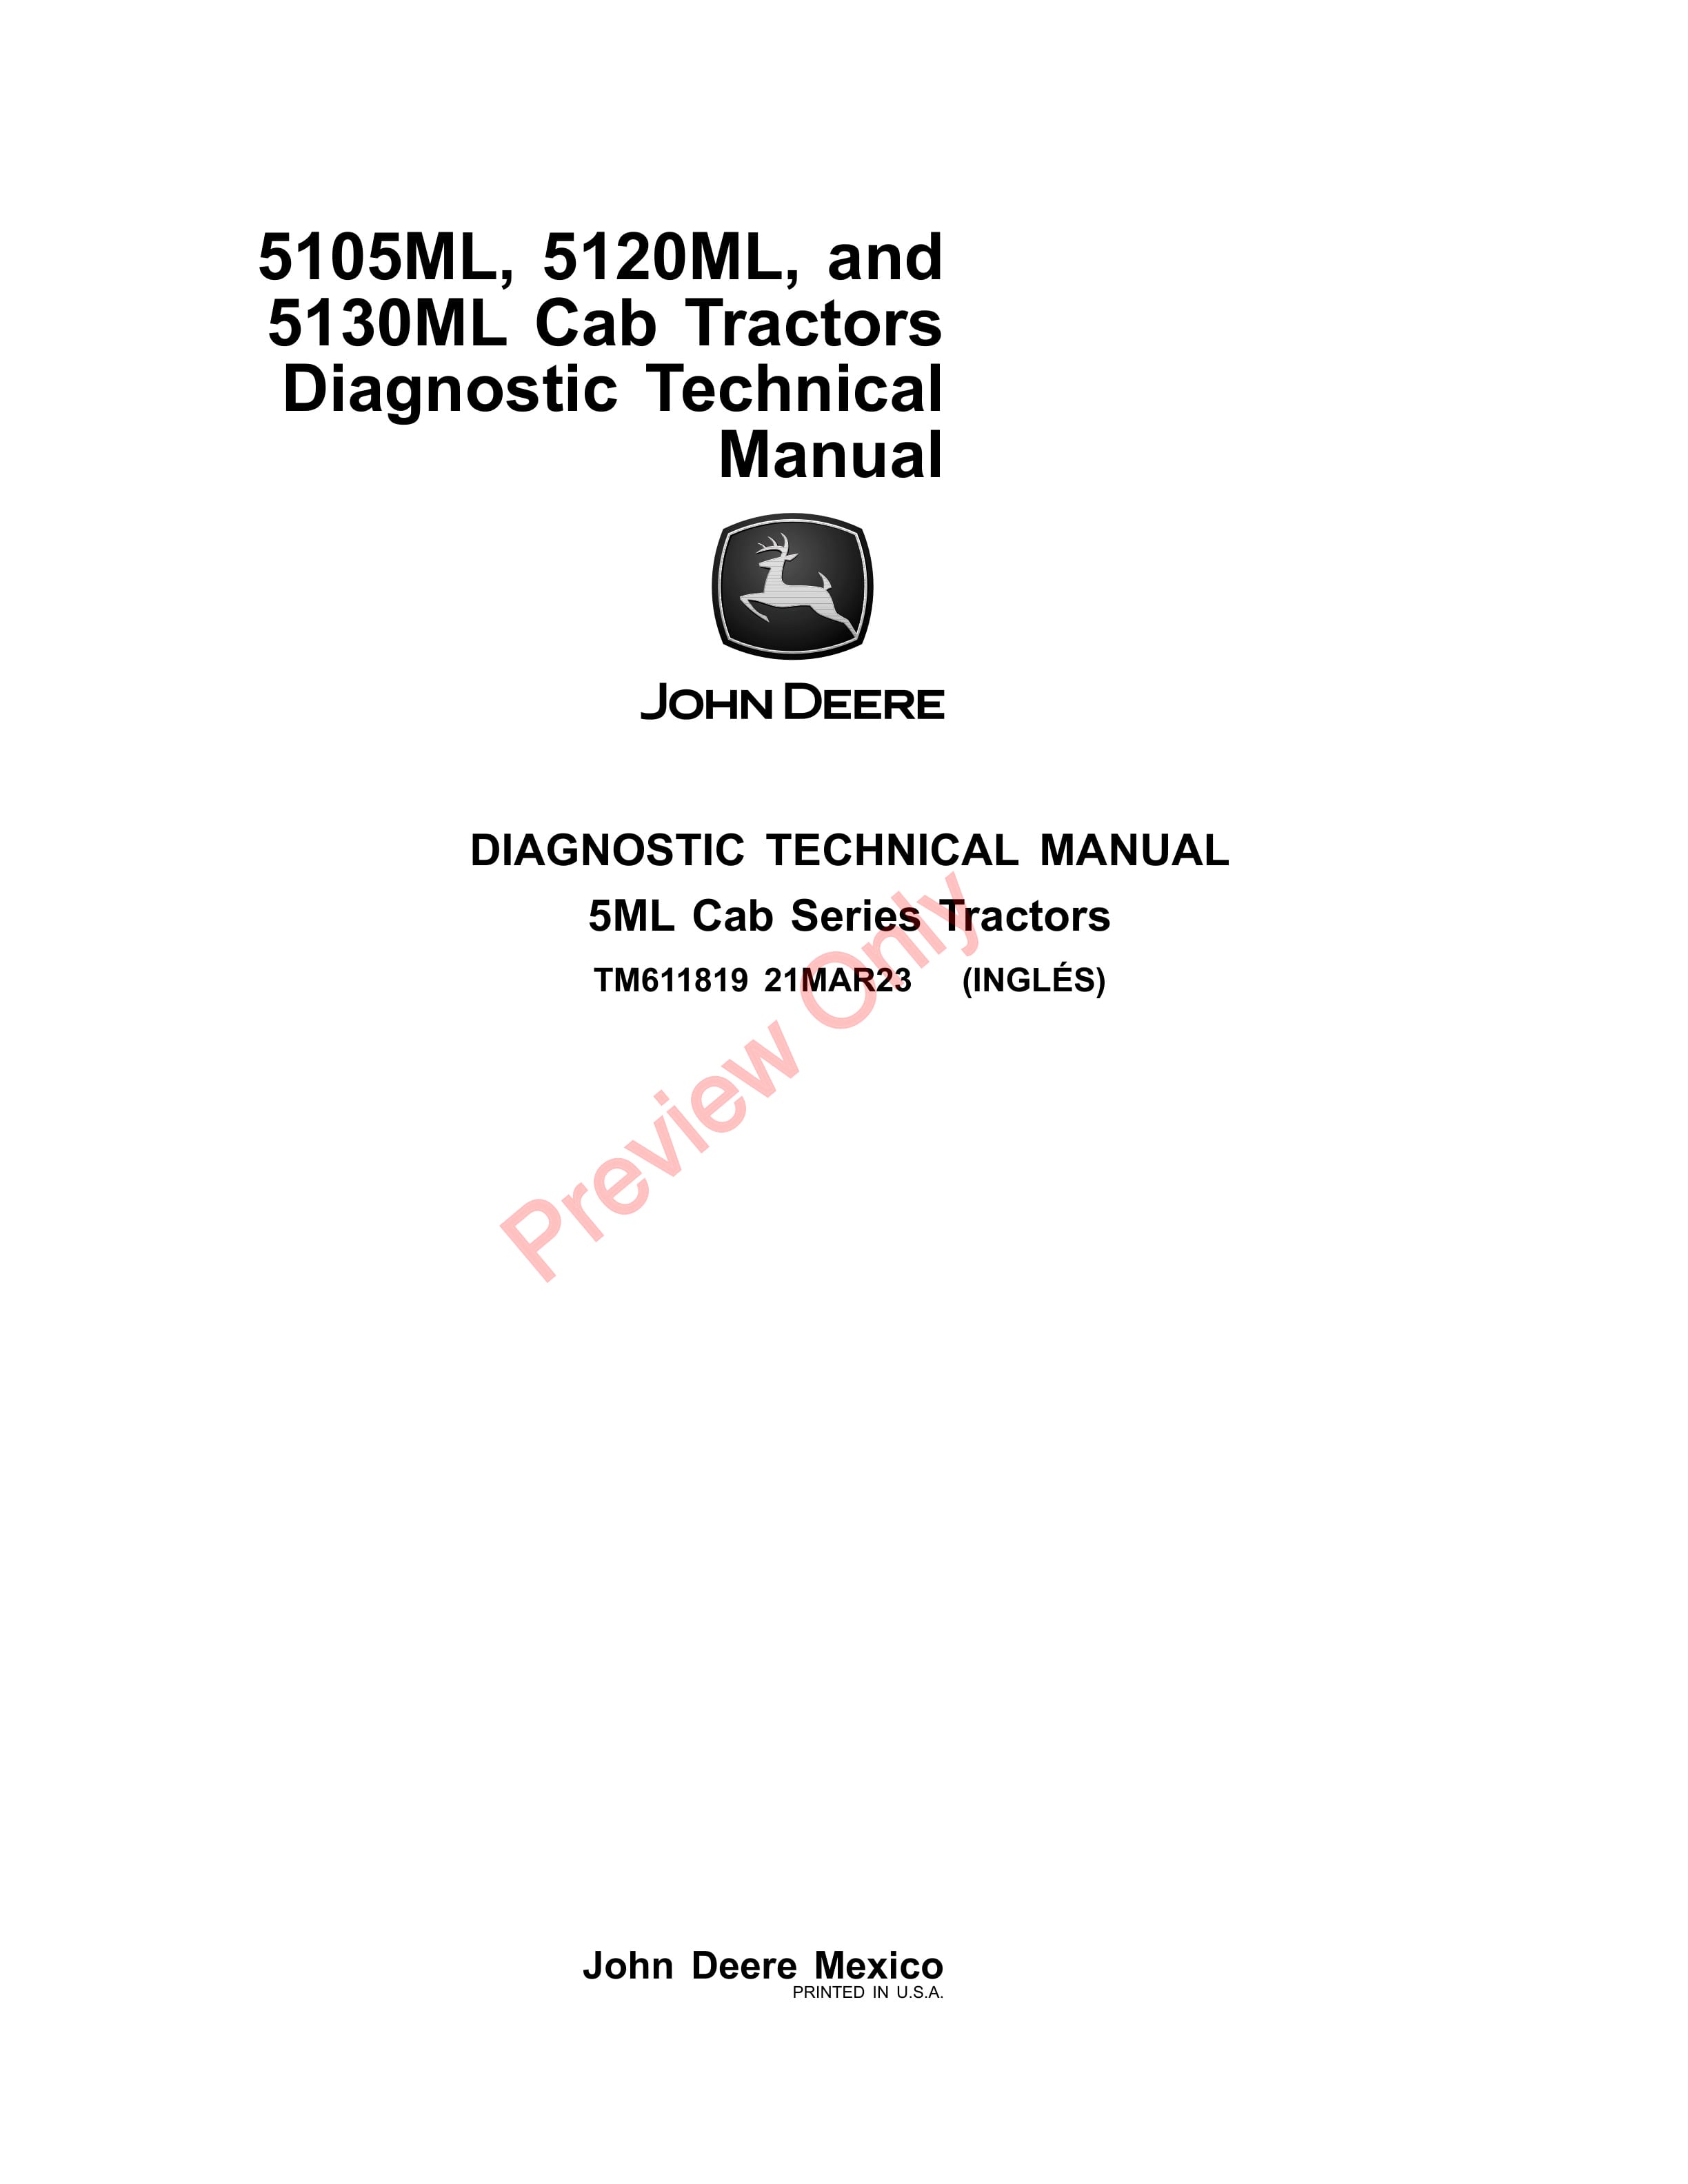 John Deere 5105ML 5120ML and 5130ML Cab Tractors Diagnostic Technical Manual TM611819 21MAR23 1